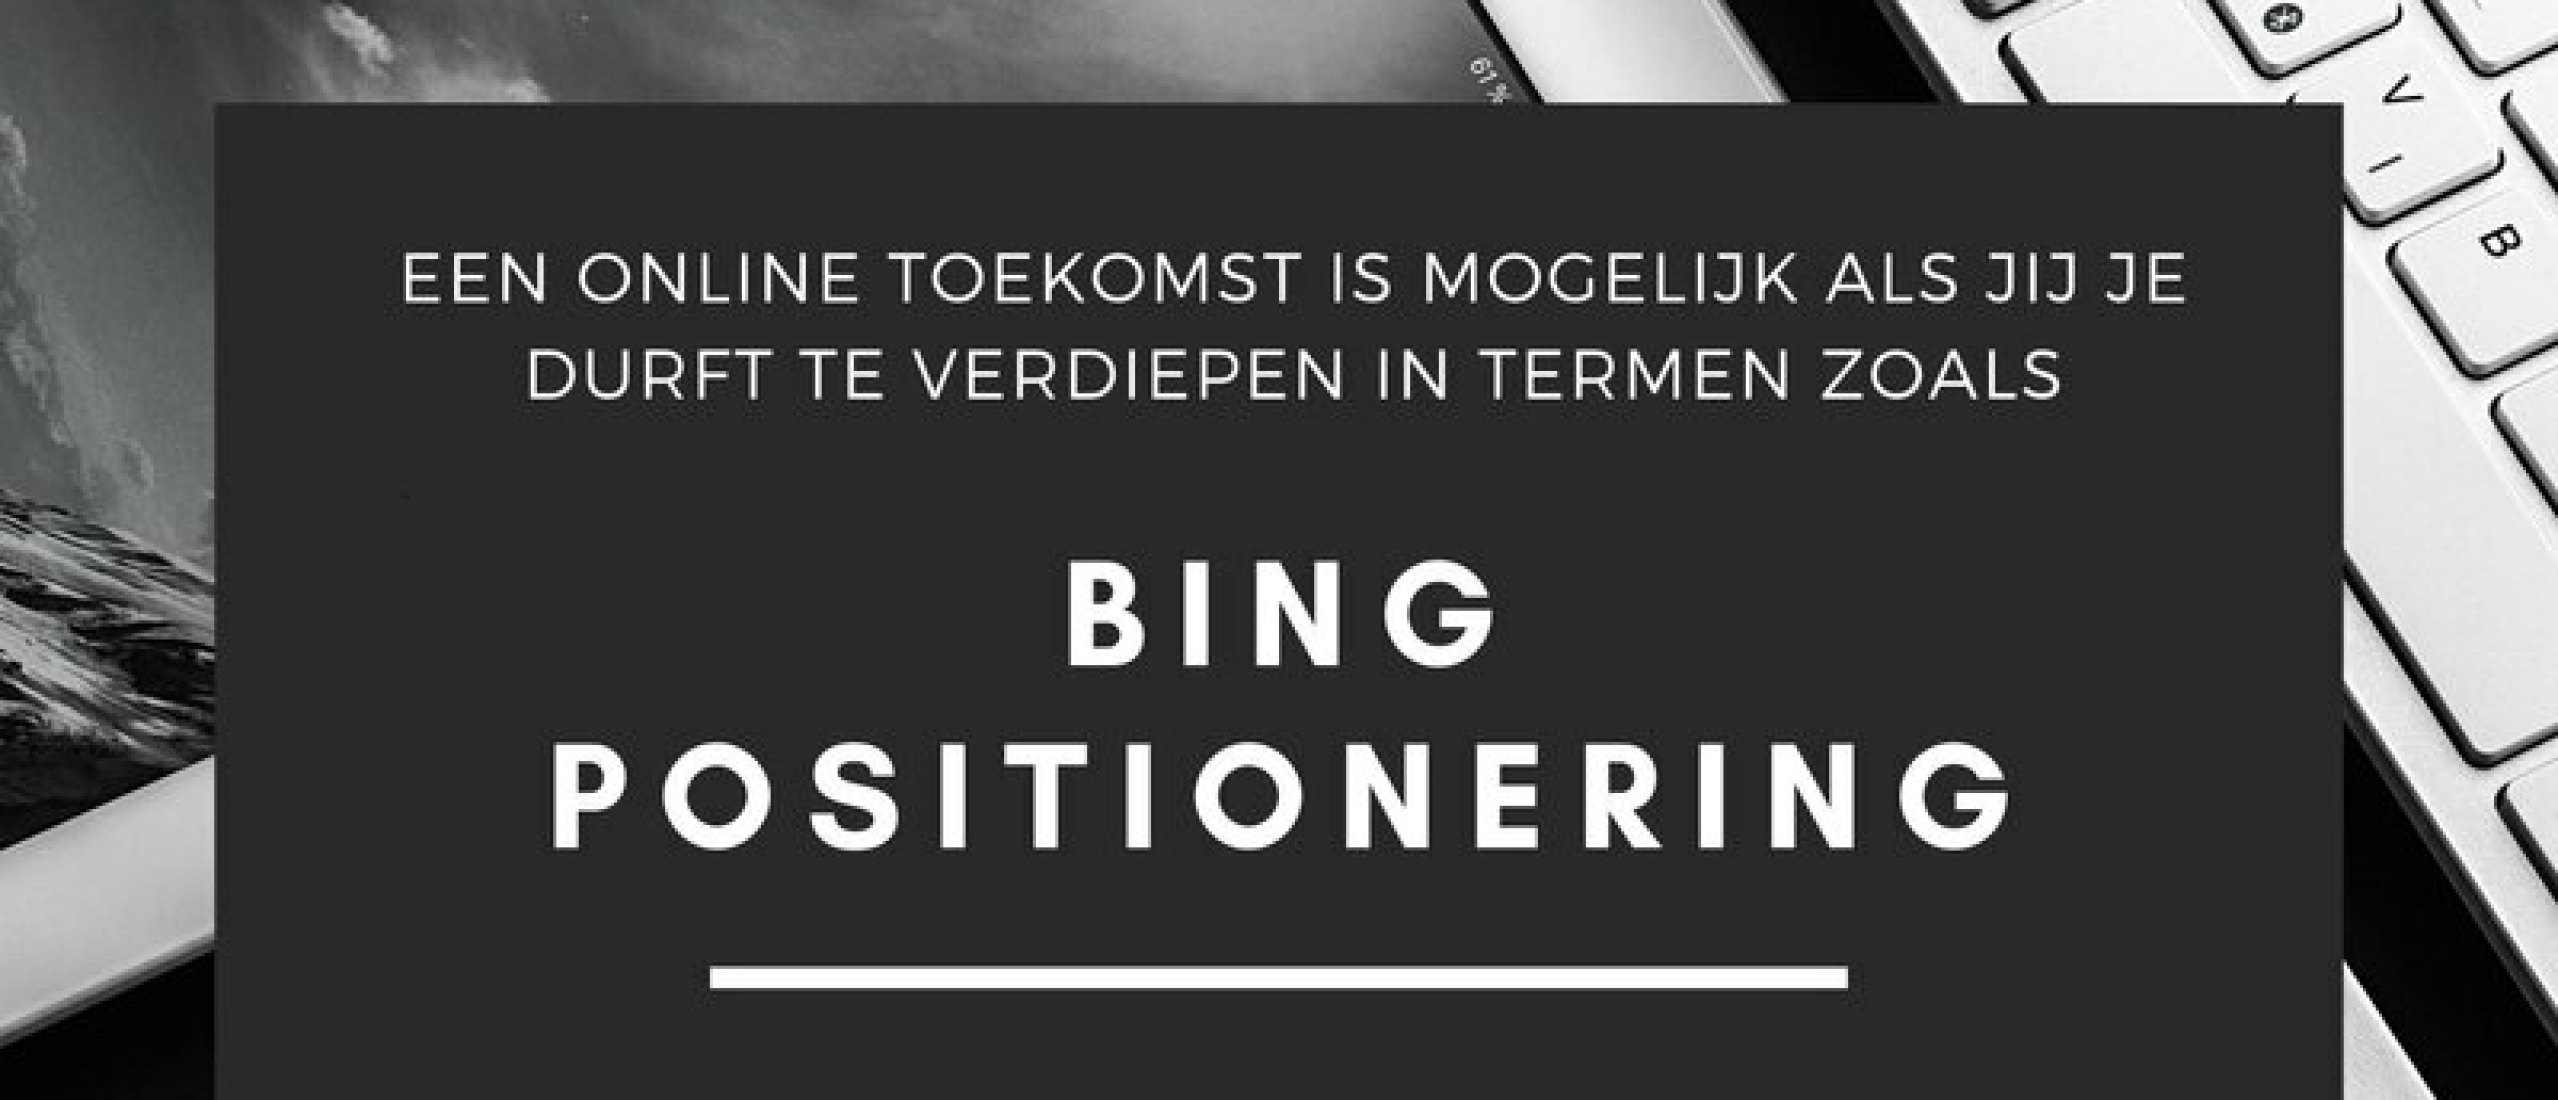 Bing Zoekmachine